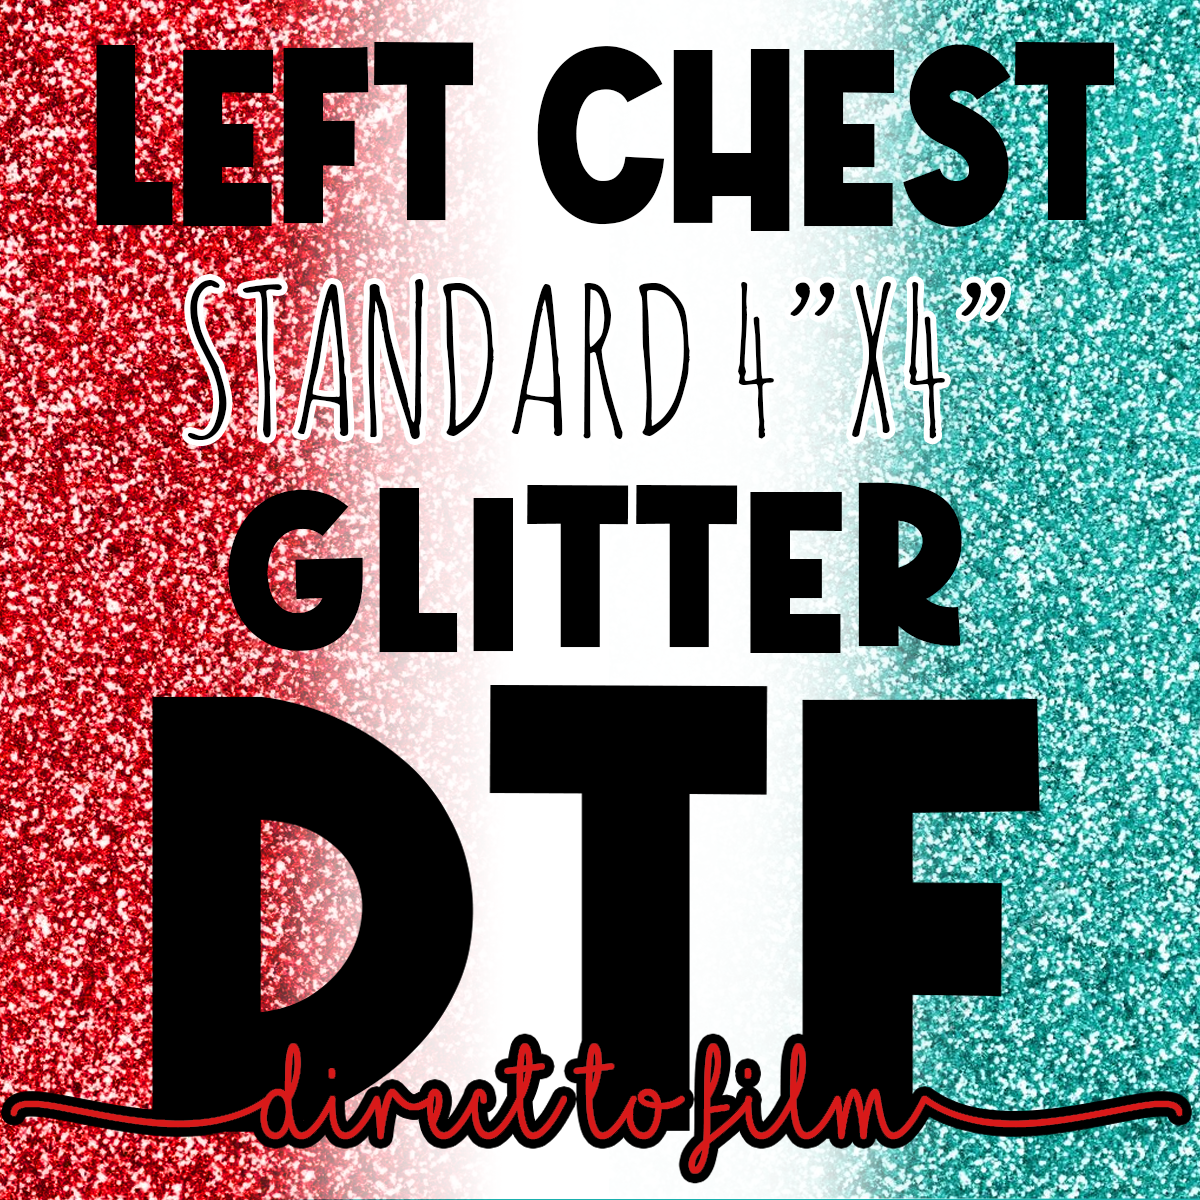 DTF Glitter Left Chest Transfer 4"x4"